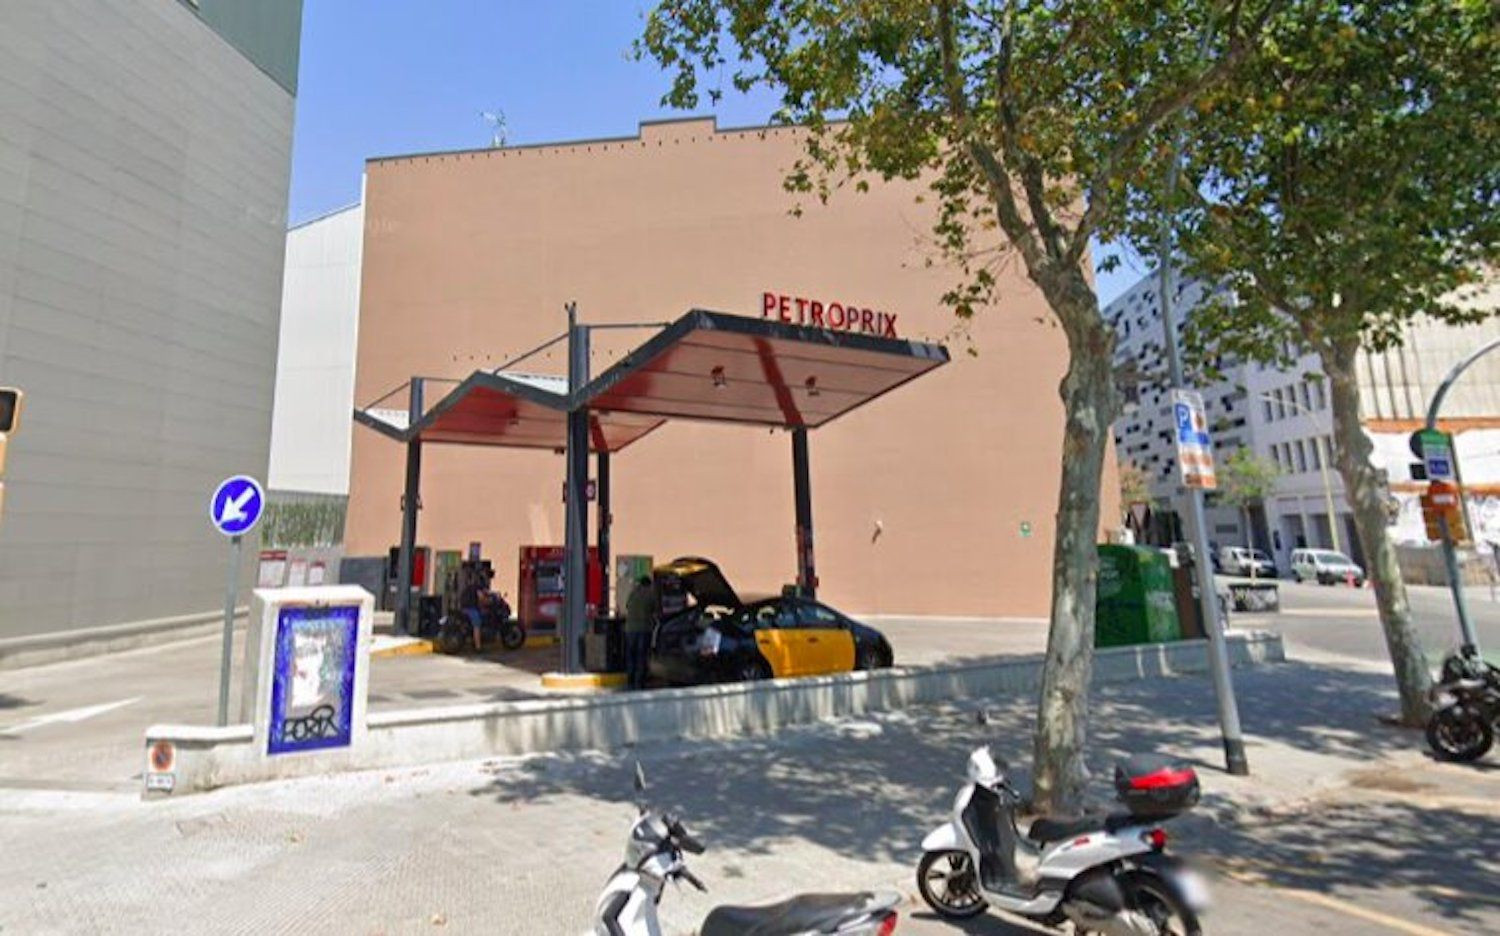 Gasolinera Petroprix de la calle Badajoz 108, donde está la gasolina más barata / GOOGLE STREET VIEW